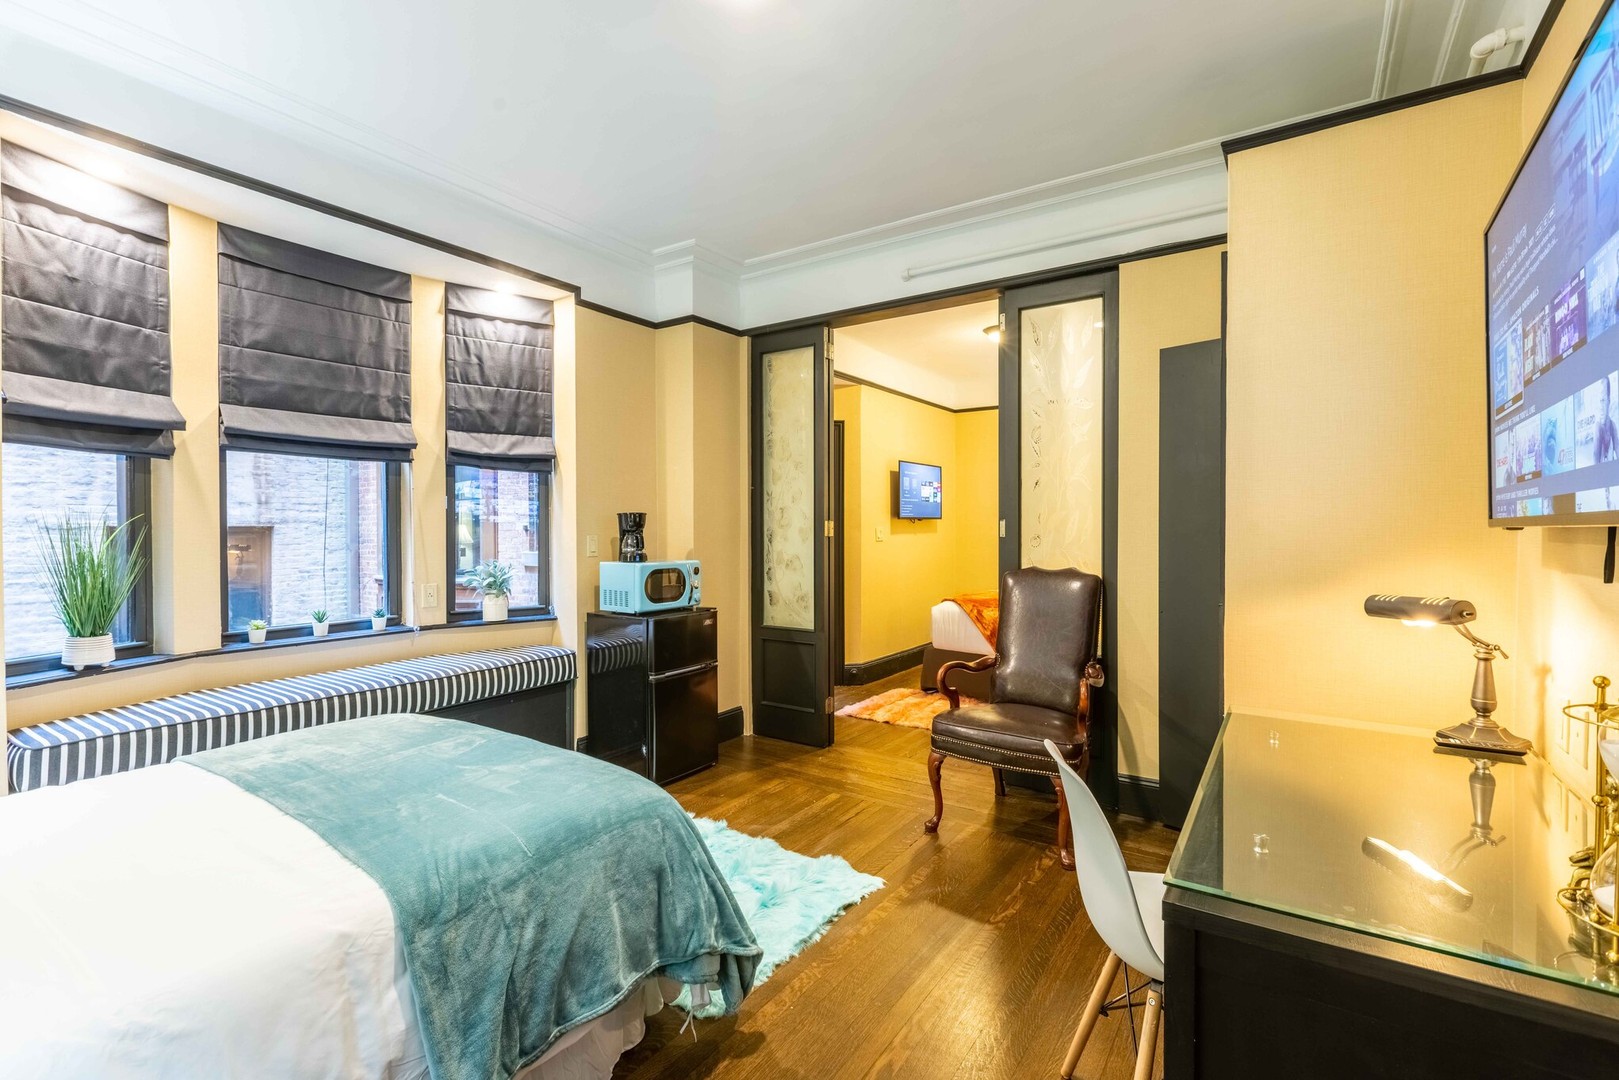 New York de çift kişilik yataklı kiralık oda